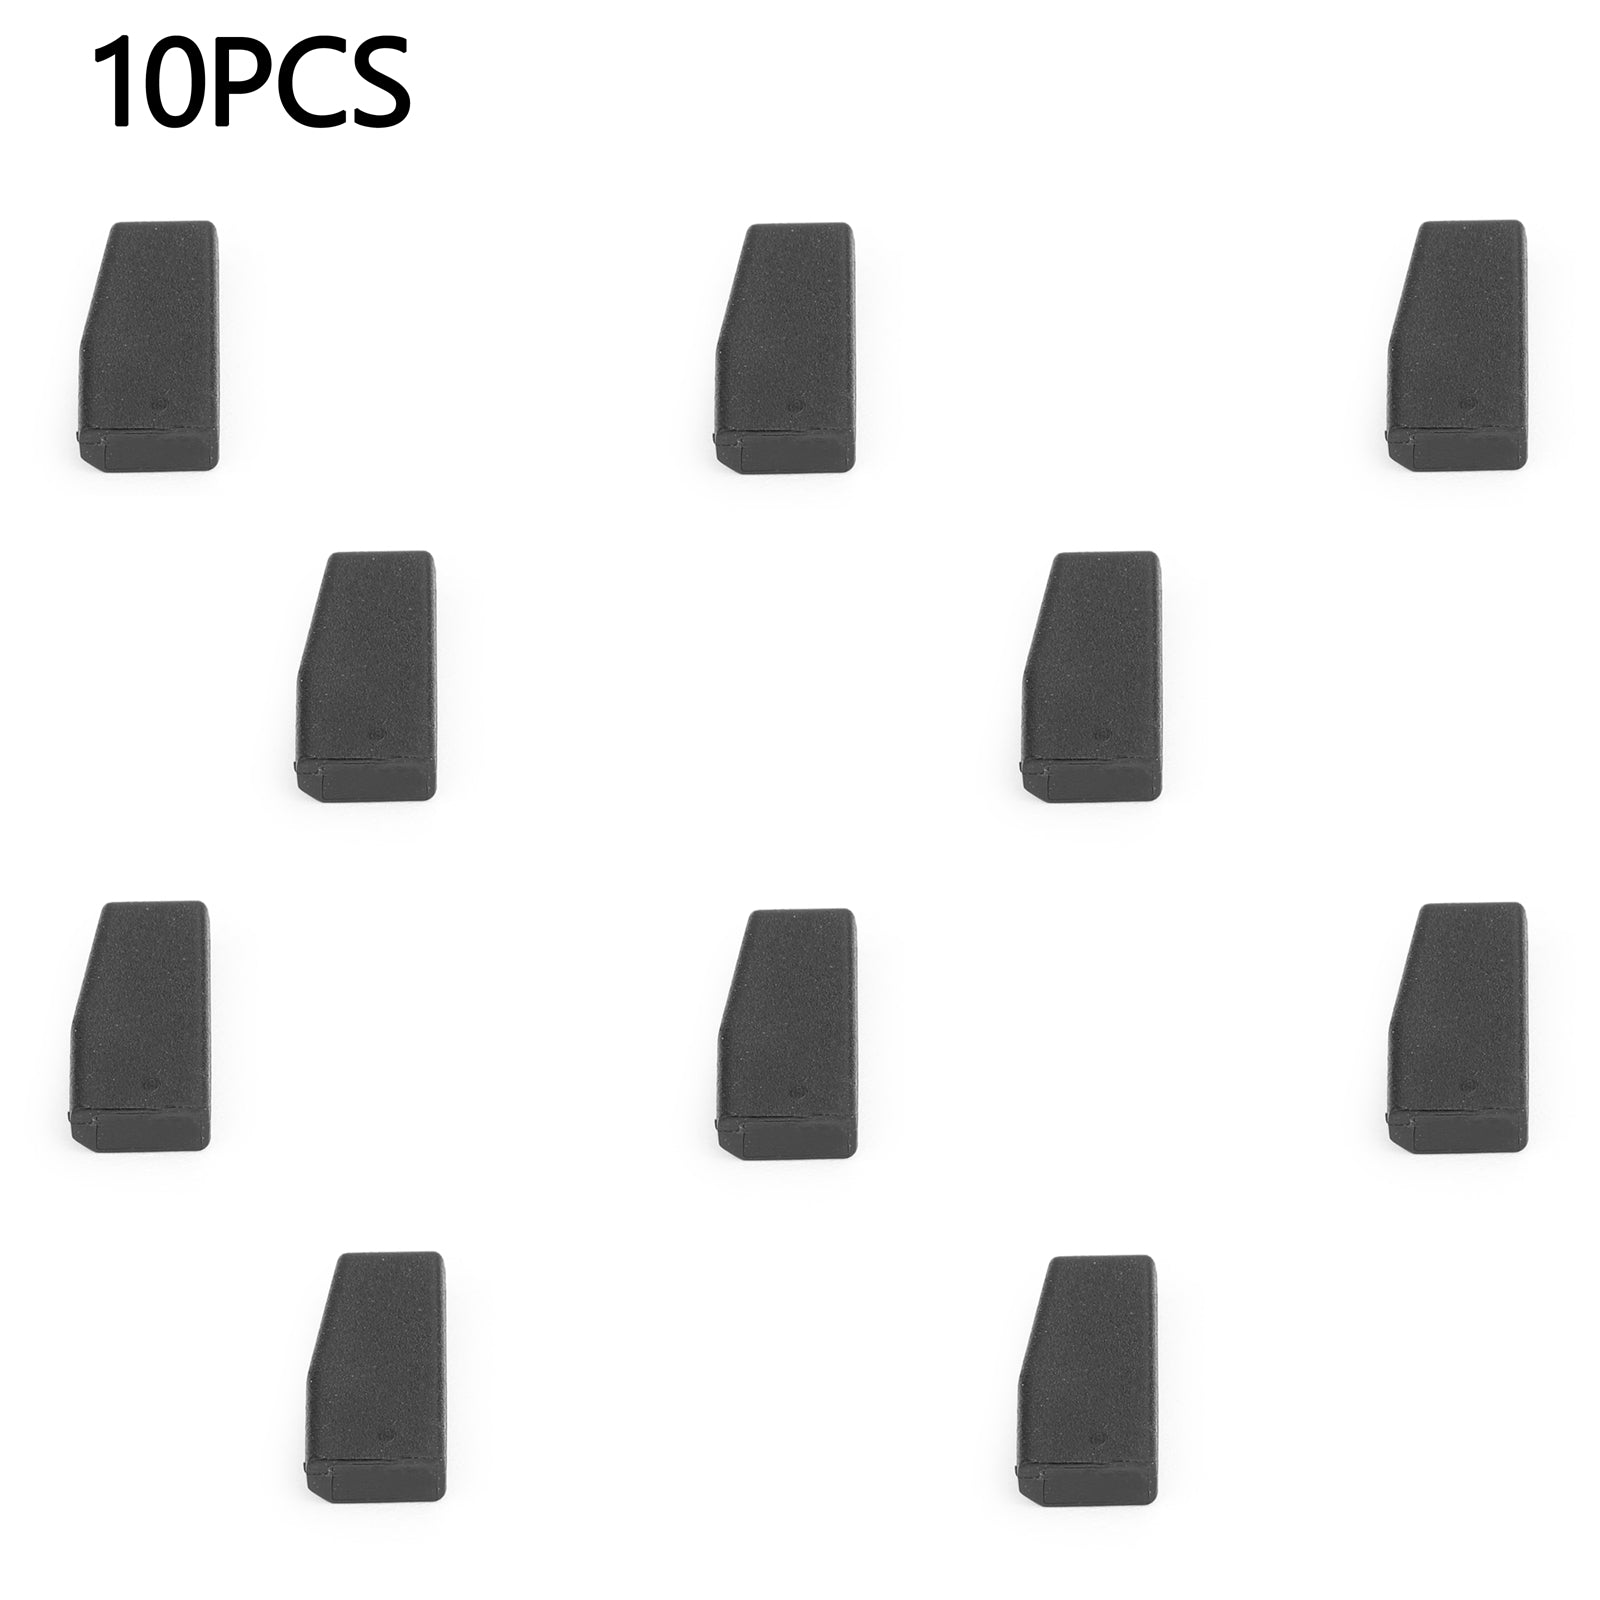 PCF7936 10 piezas ID46 Chip PCF7936AS transpondedor en blanco (reemplaza PCF7936) clave compatible genérica